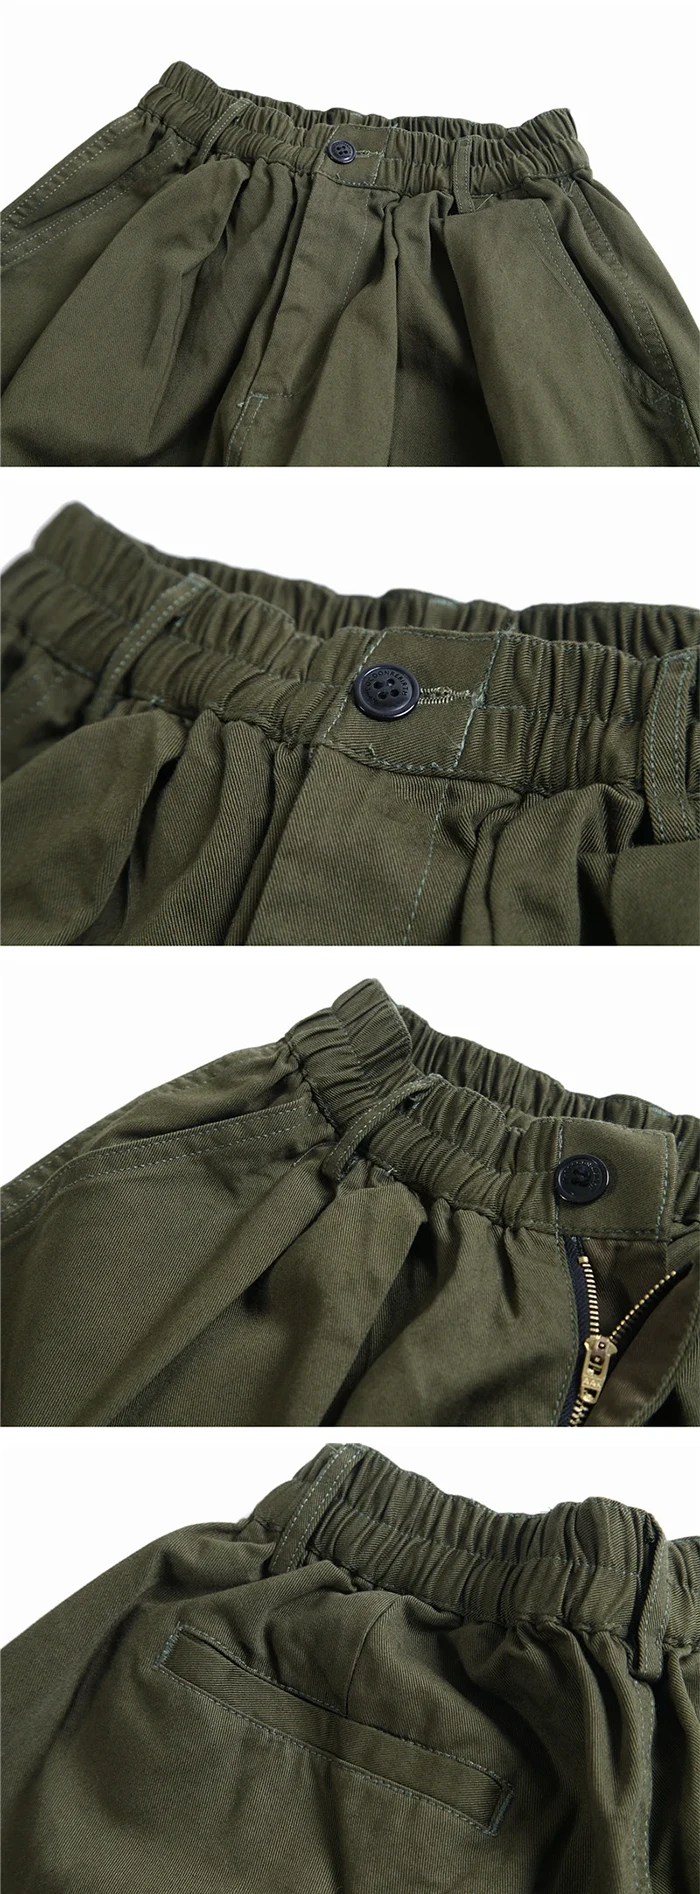 details of the Oversized pants "Kushima"